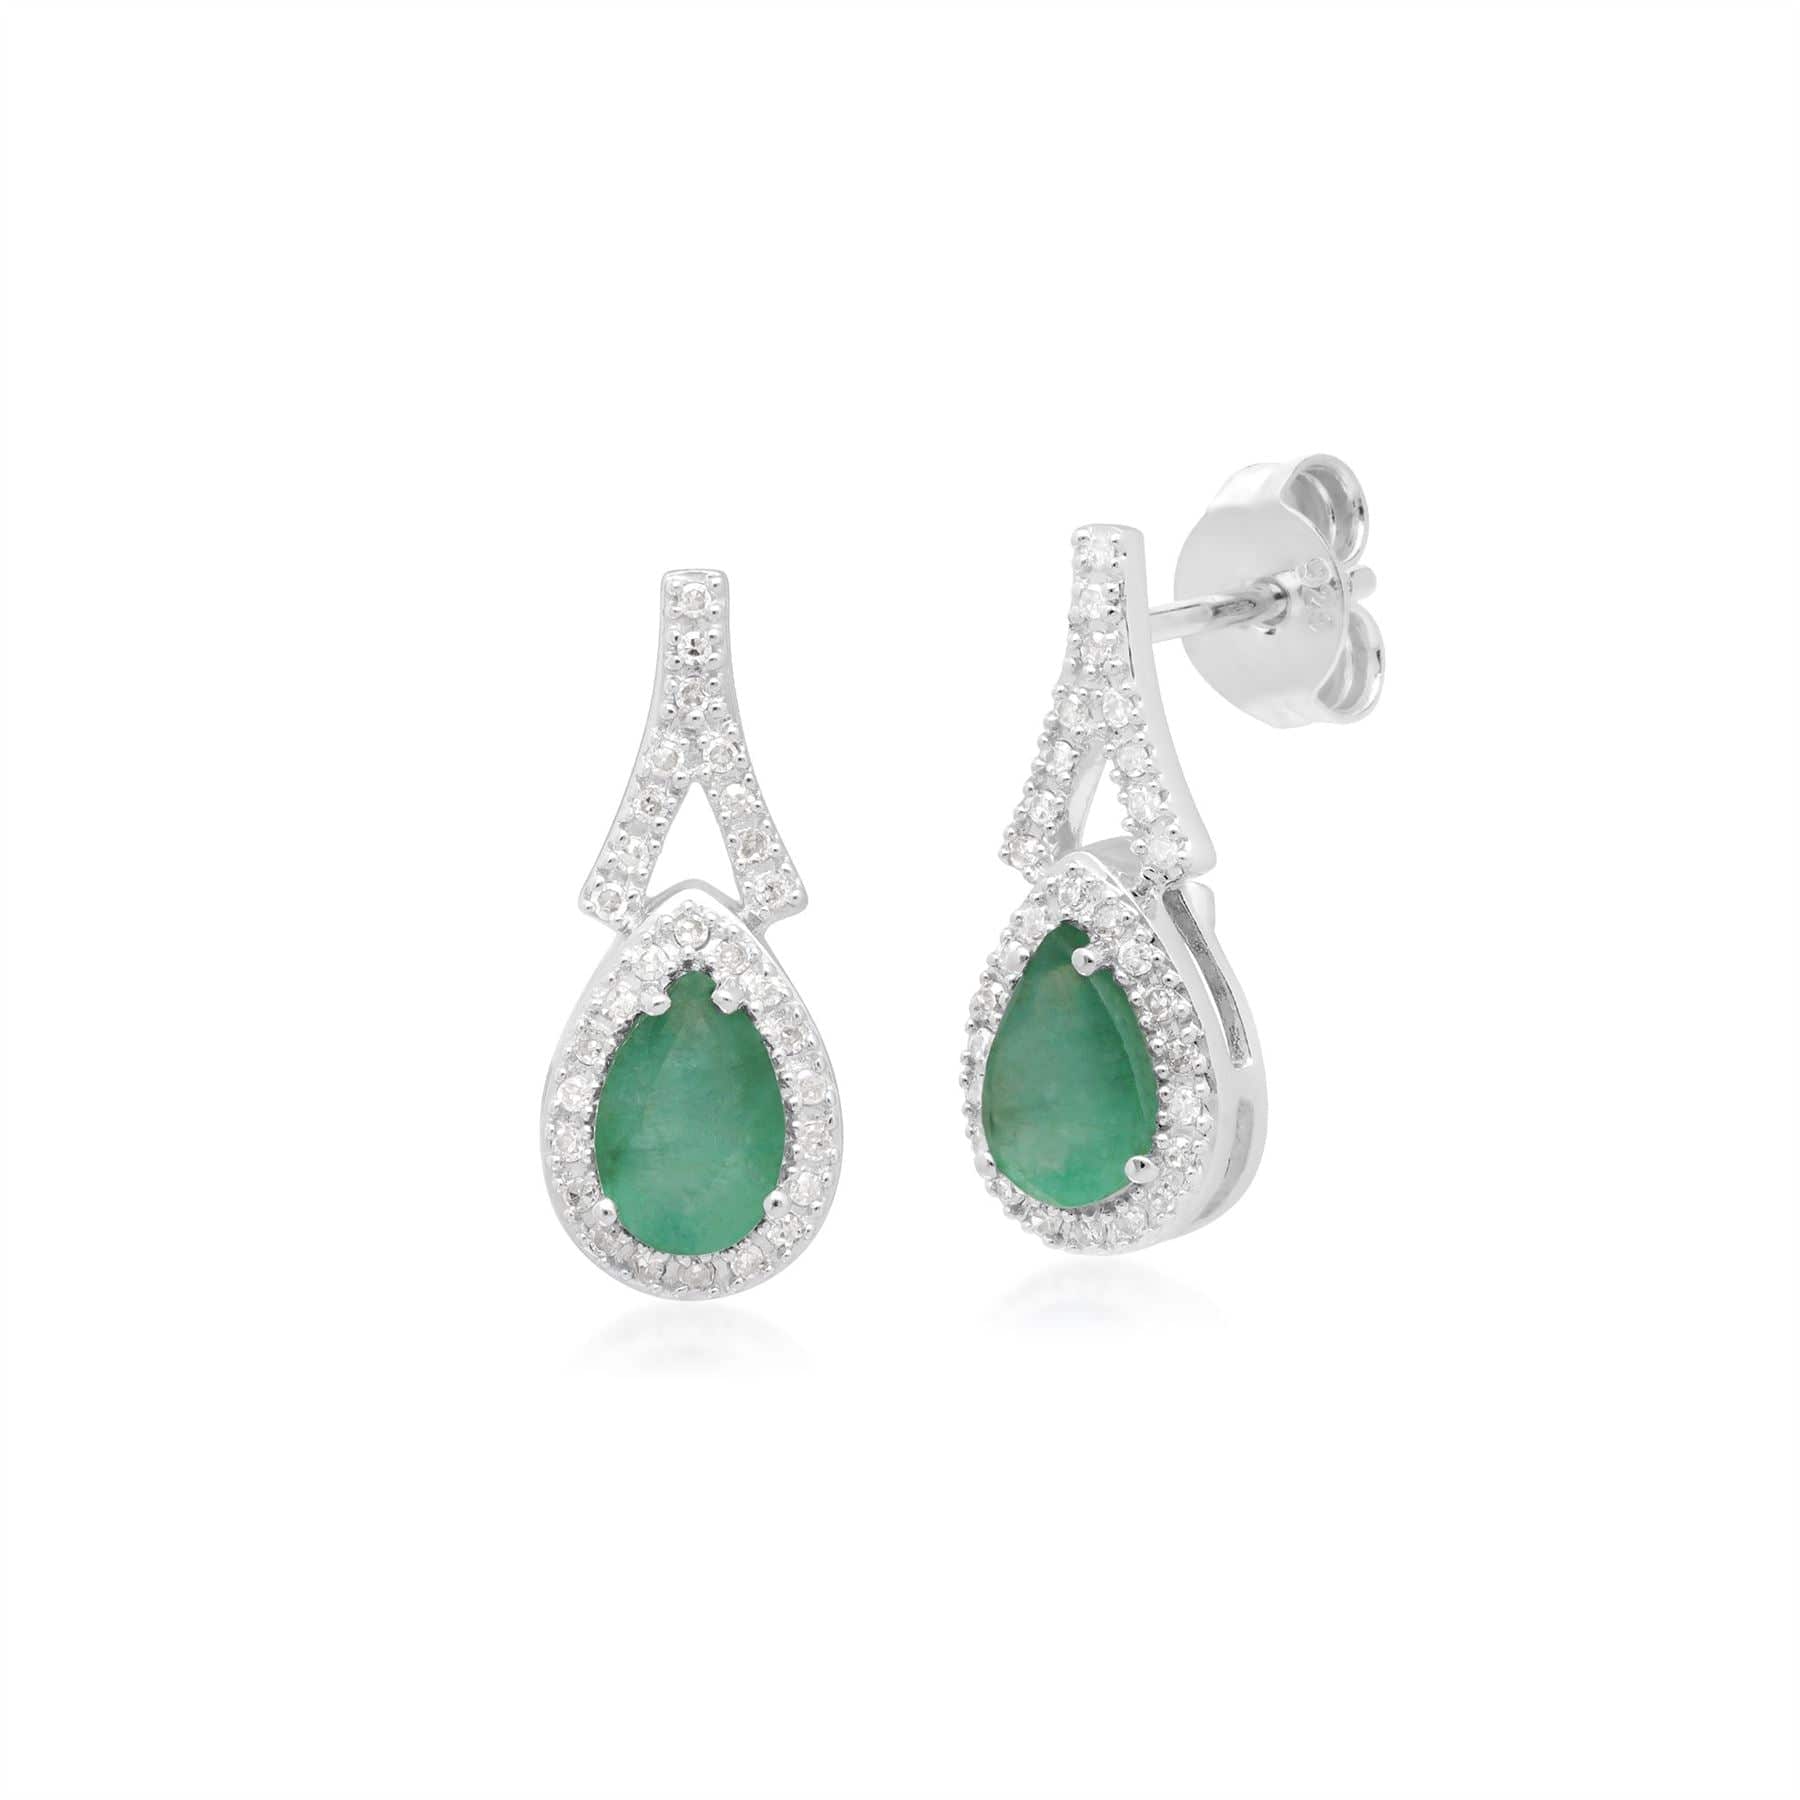 Teardrop Luxe Emerald & Diamond Drop Earrings in 9ct White Gold